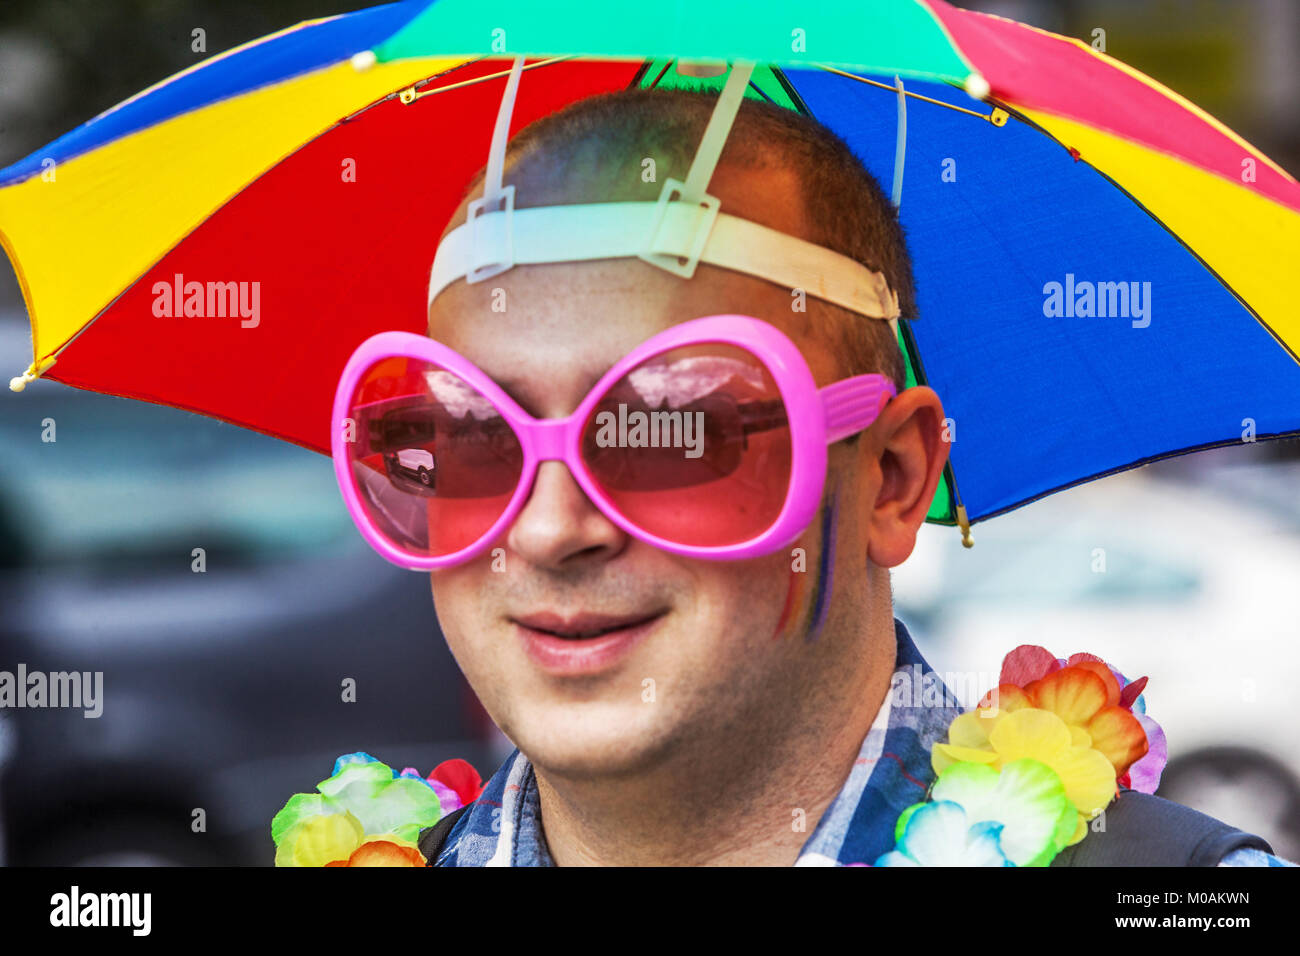 Ombrello lgbt immagini e fotografie stock ad alta risoluzione - Alamy